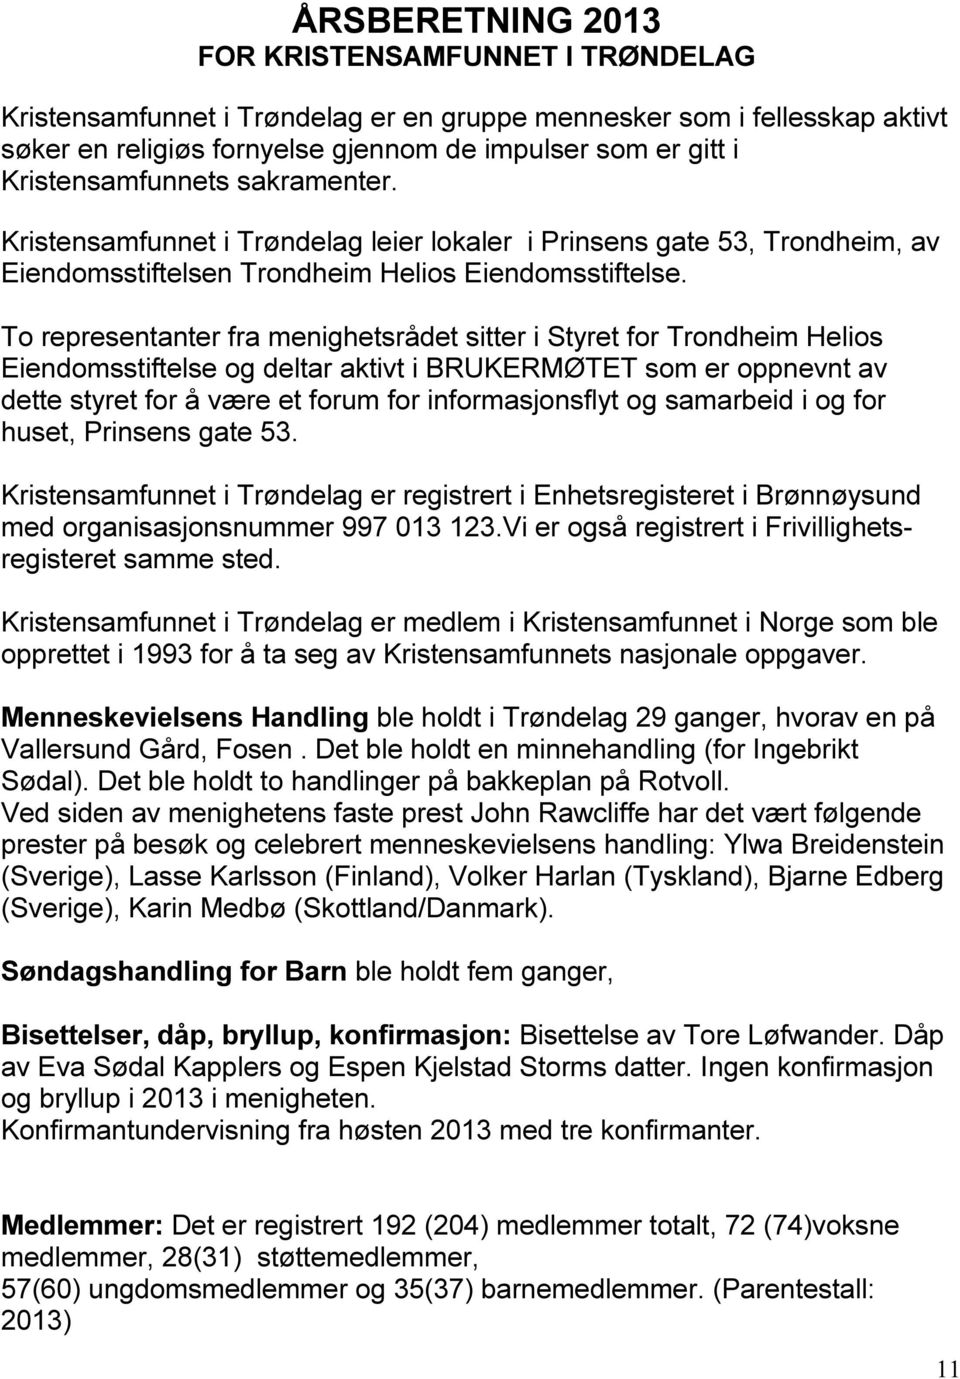 To representanter fra menighetsrådet sitter i Styret for Trondheim Helios Eiendomsstiftelse og deltar aktivt i BRUKERMØTET som er oppnevnt av dette styret for å være et forum for informasjonsflyt og